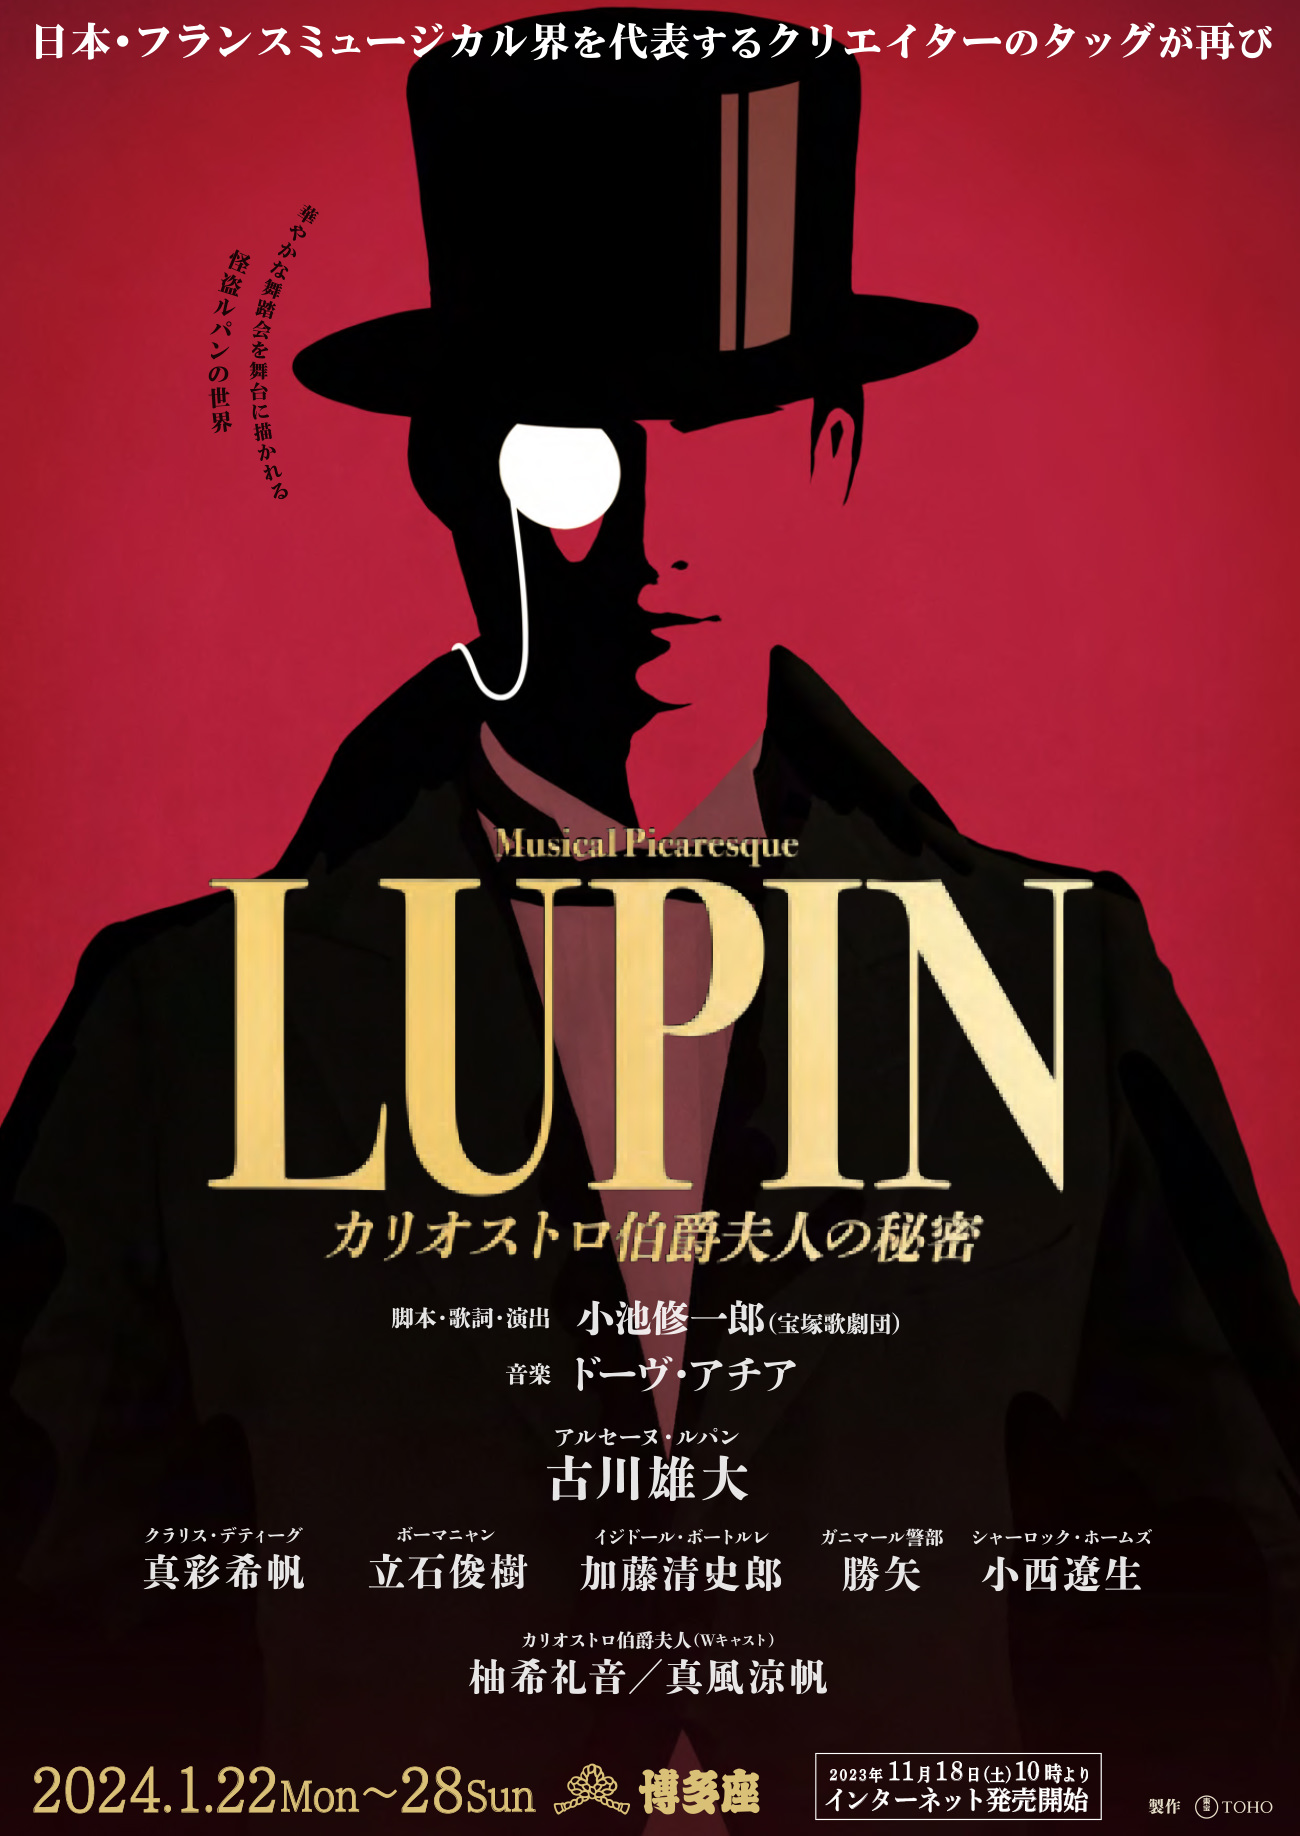 ミュージカル・ピカレスク『LUPIN ～カリオストロ伯爵夫人の秘密～』